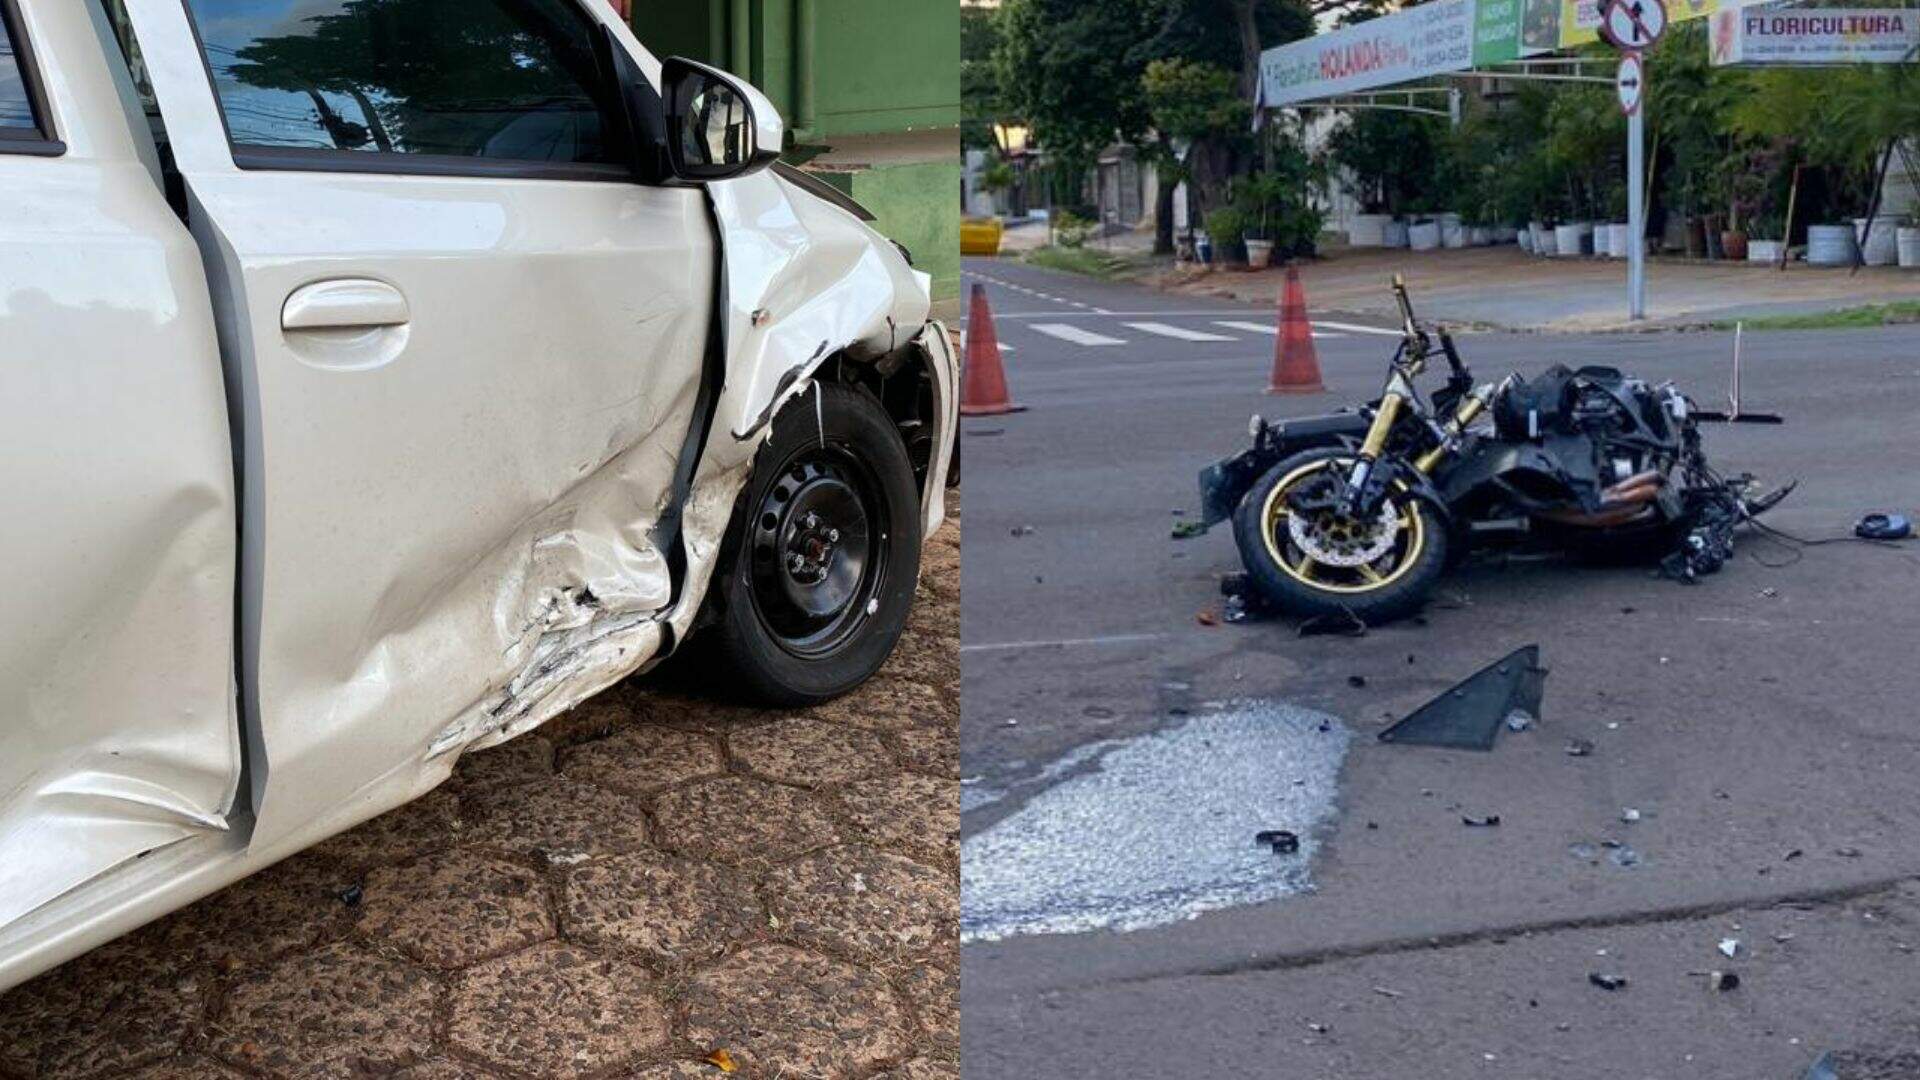 Motociclista fica estado em grave após bater em carro que fez conversão proibida